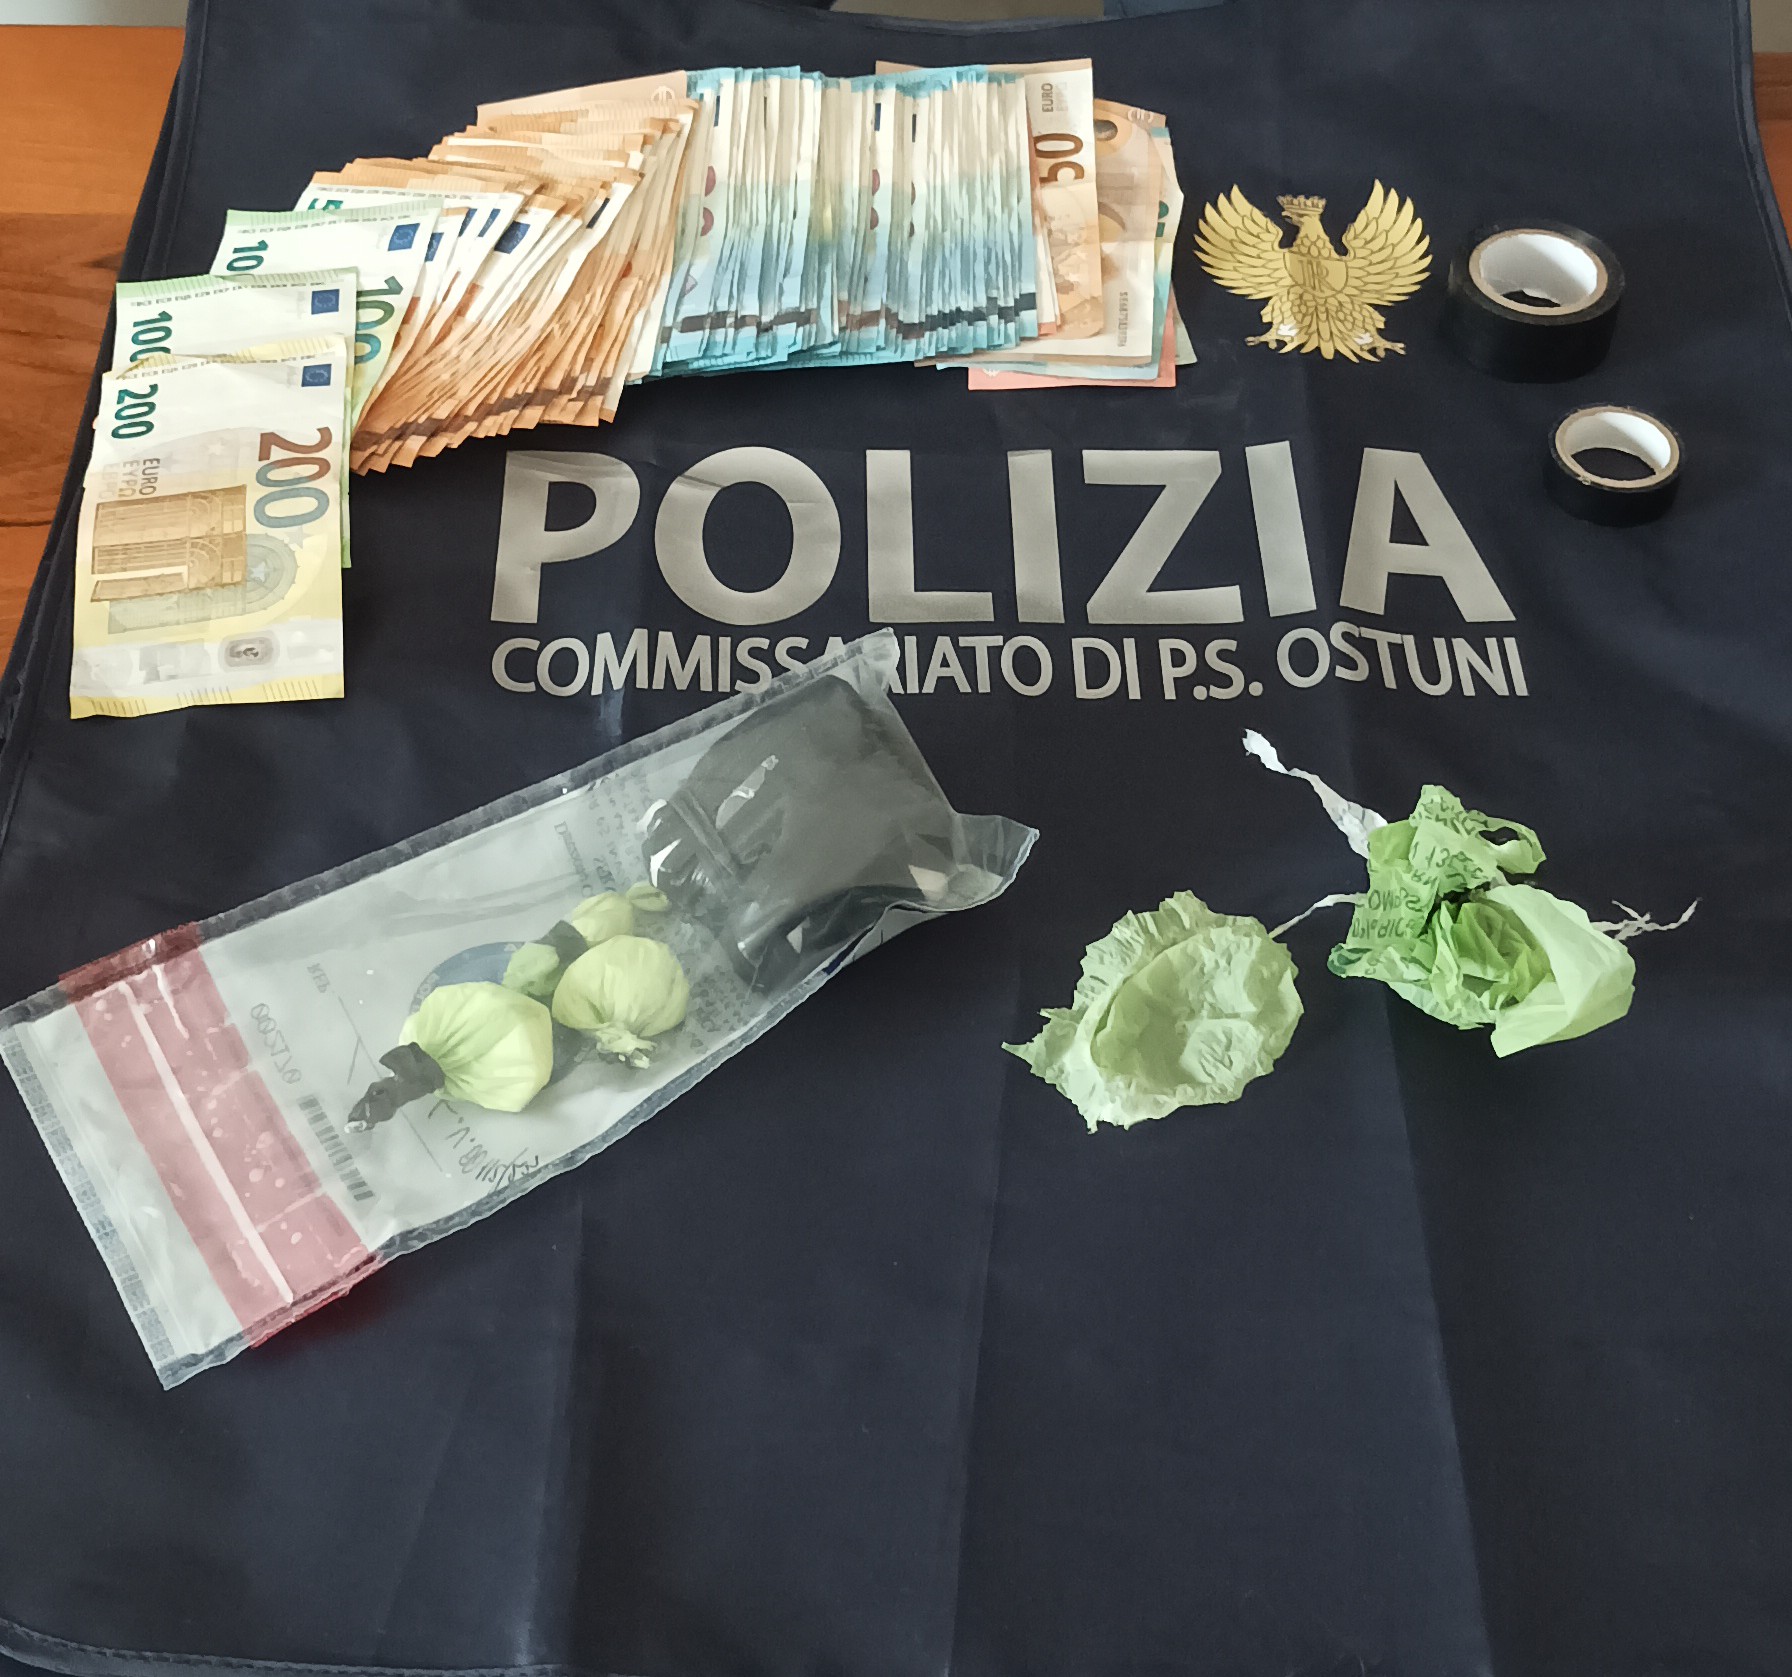 polizia_di_stato_soldi_e_droga_ostuni.jpg